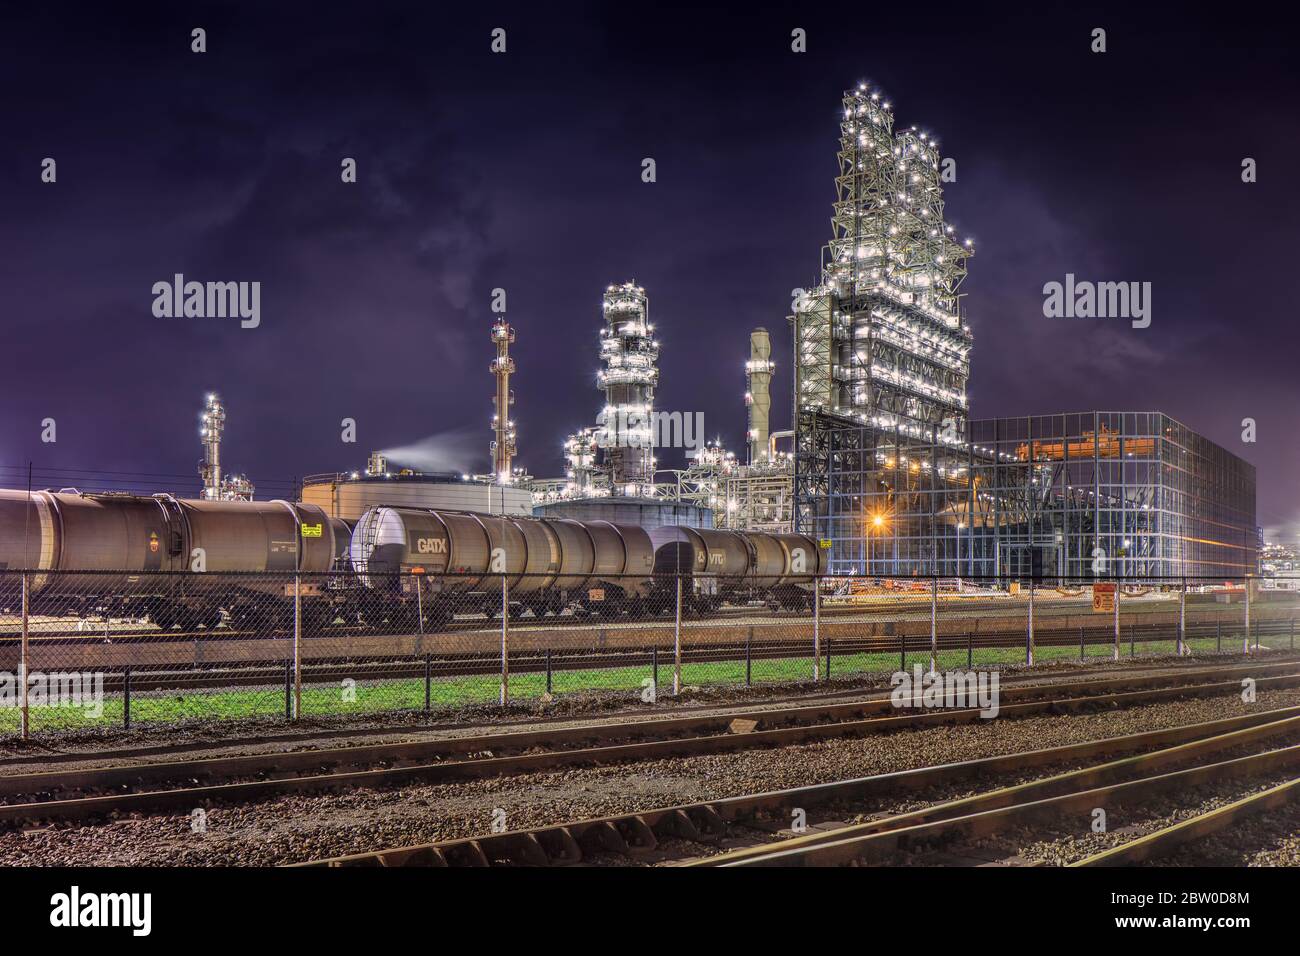 Eisenbahnhof und petrochemische Anlage Hafen von Antwerpen. Die 10 größten Chemieproduzenten der Welt sind in Antwerpen vertreten. Stockfoto